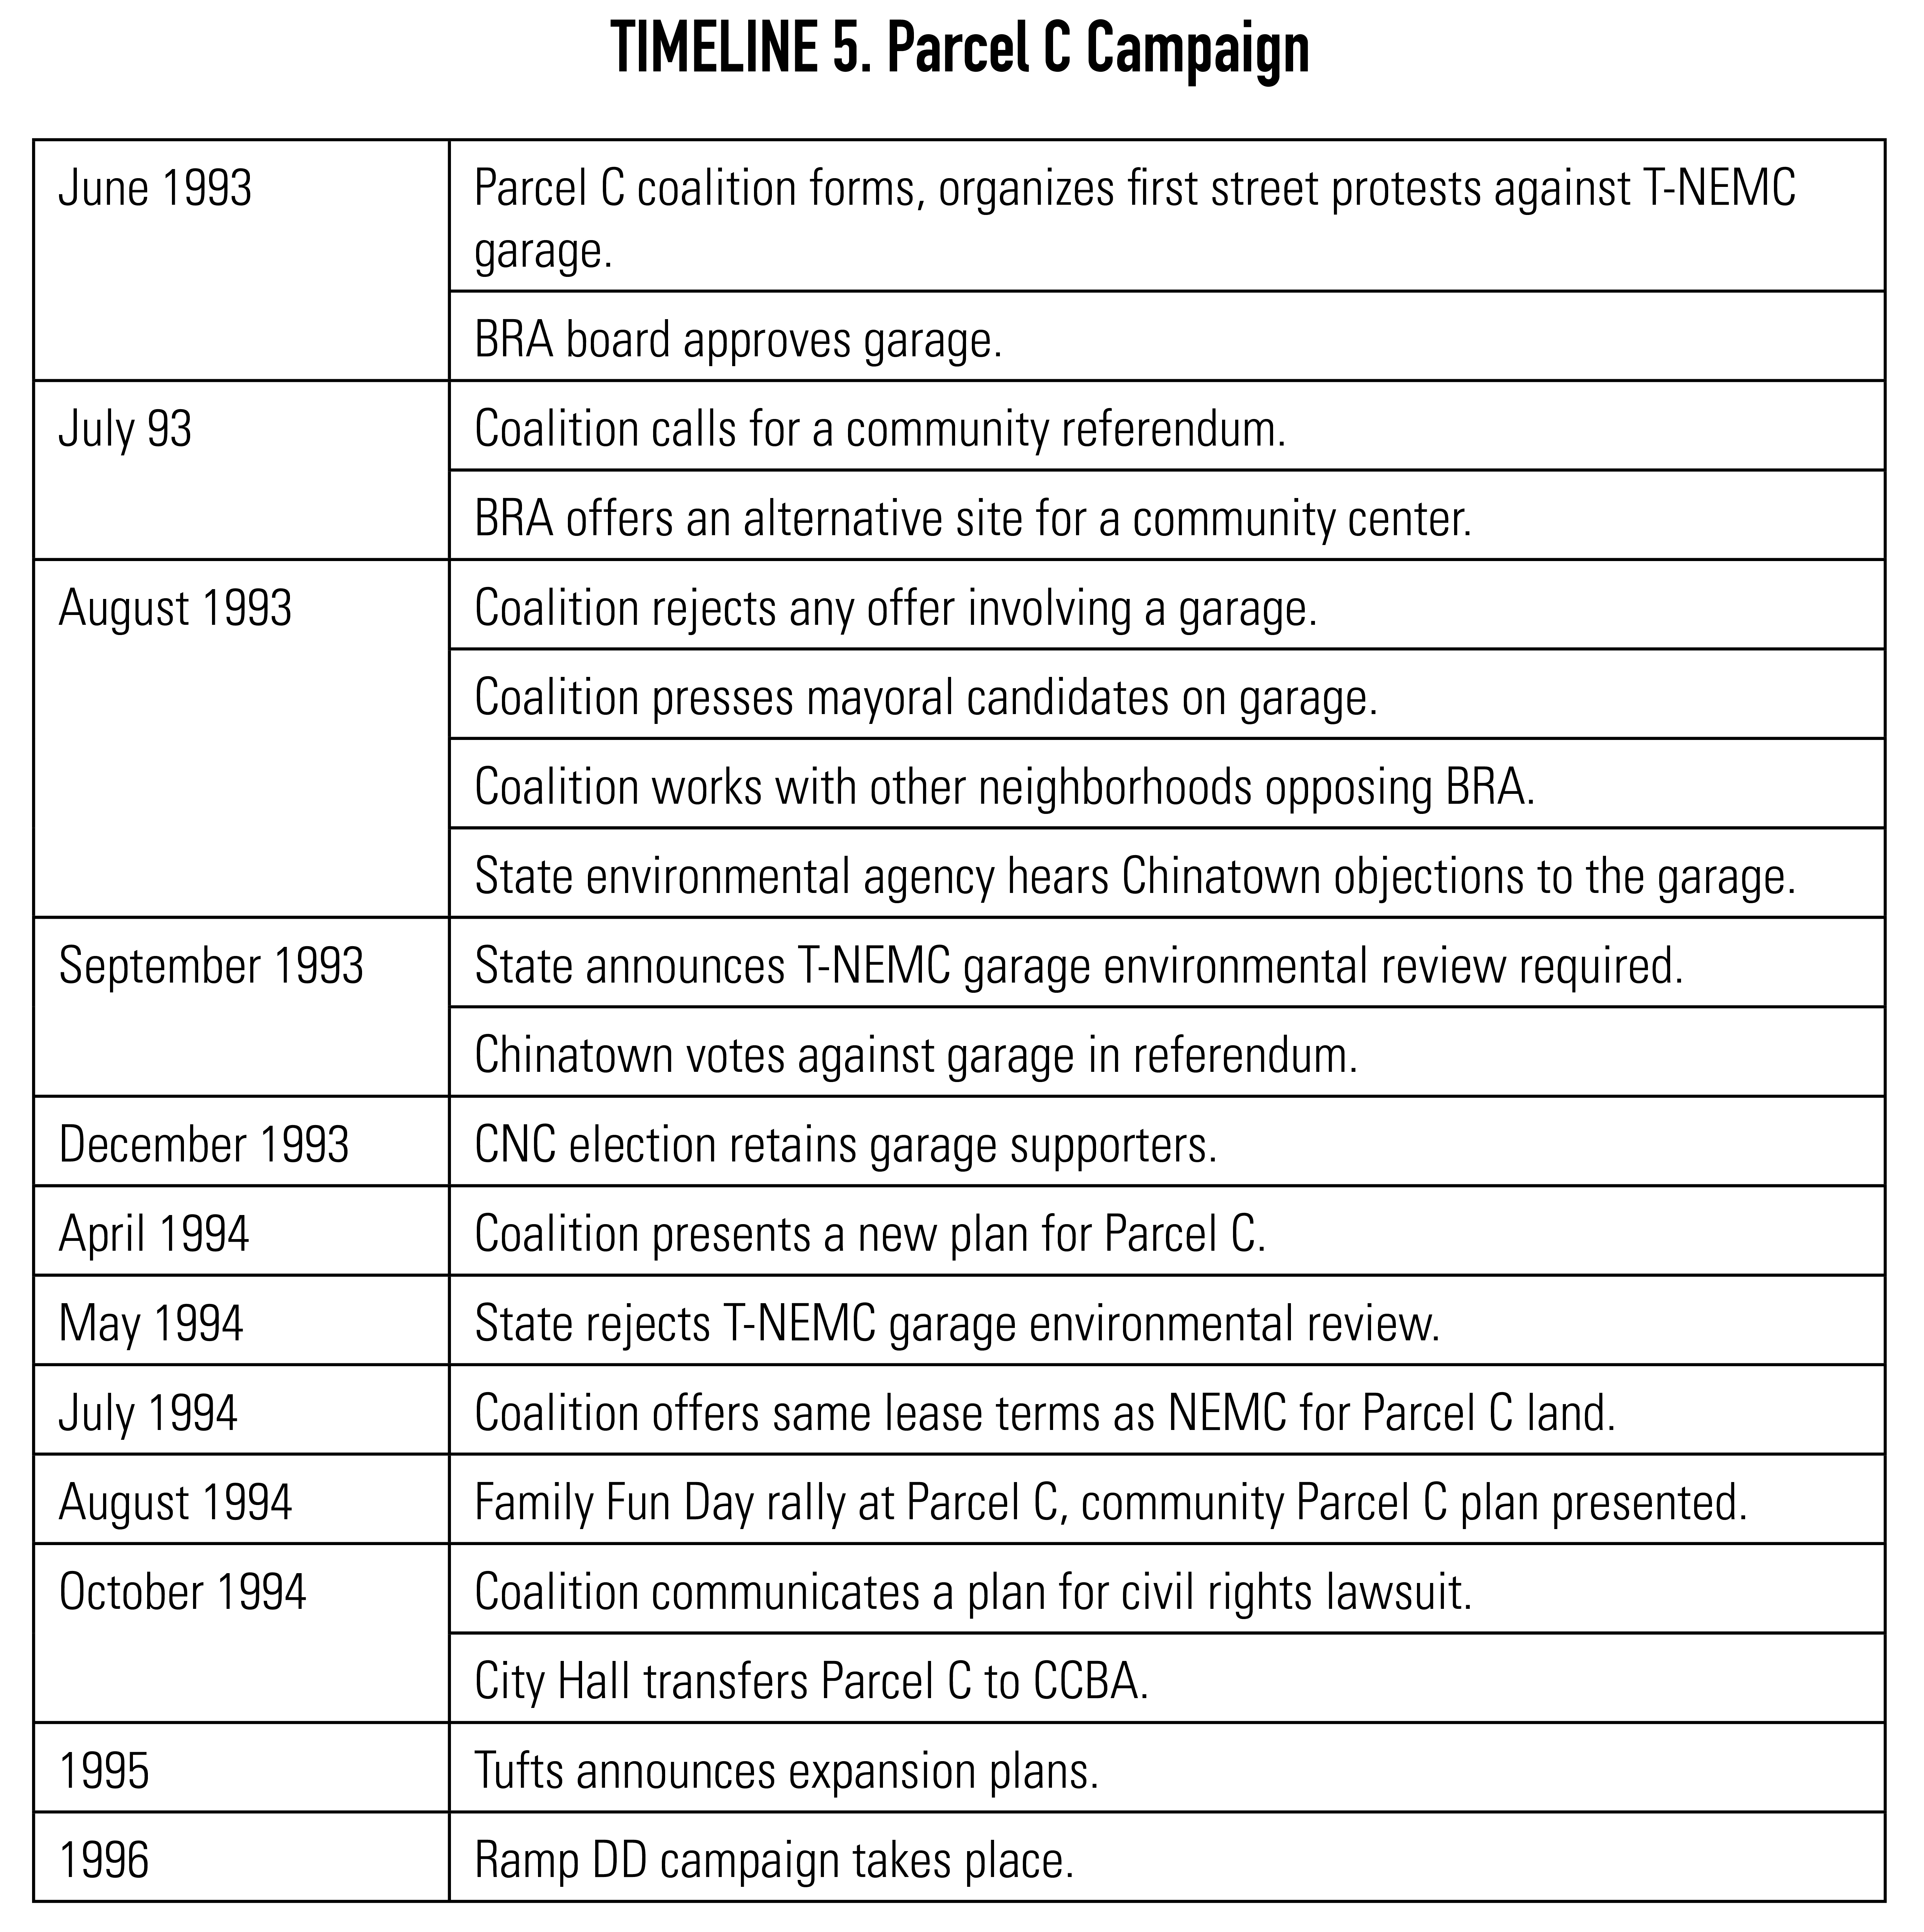 Timeline 5. Parcel C Campaign